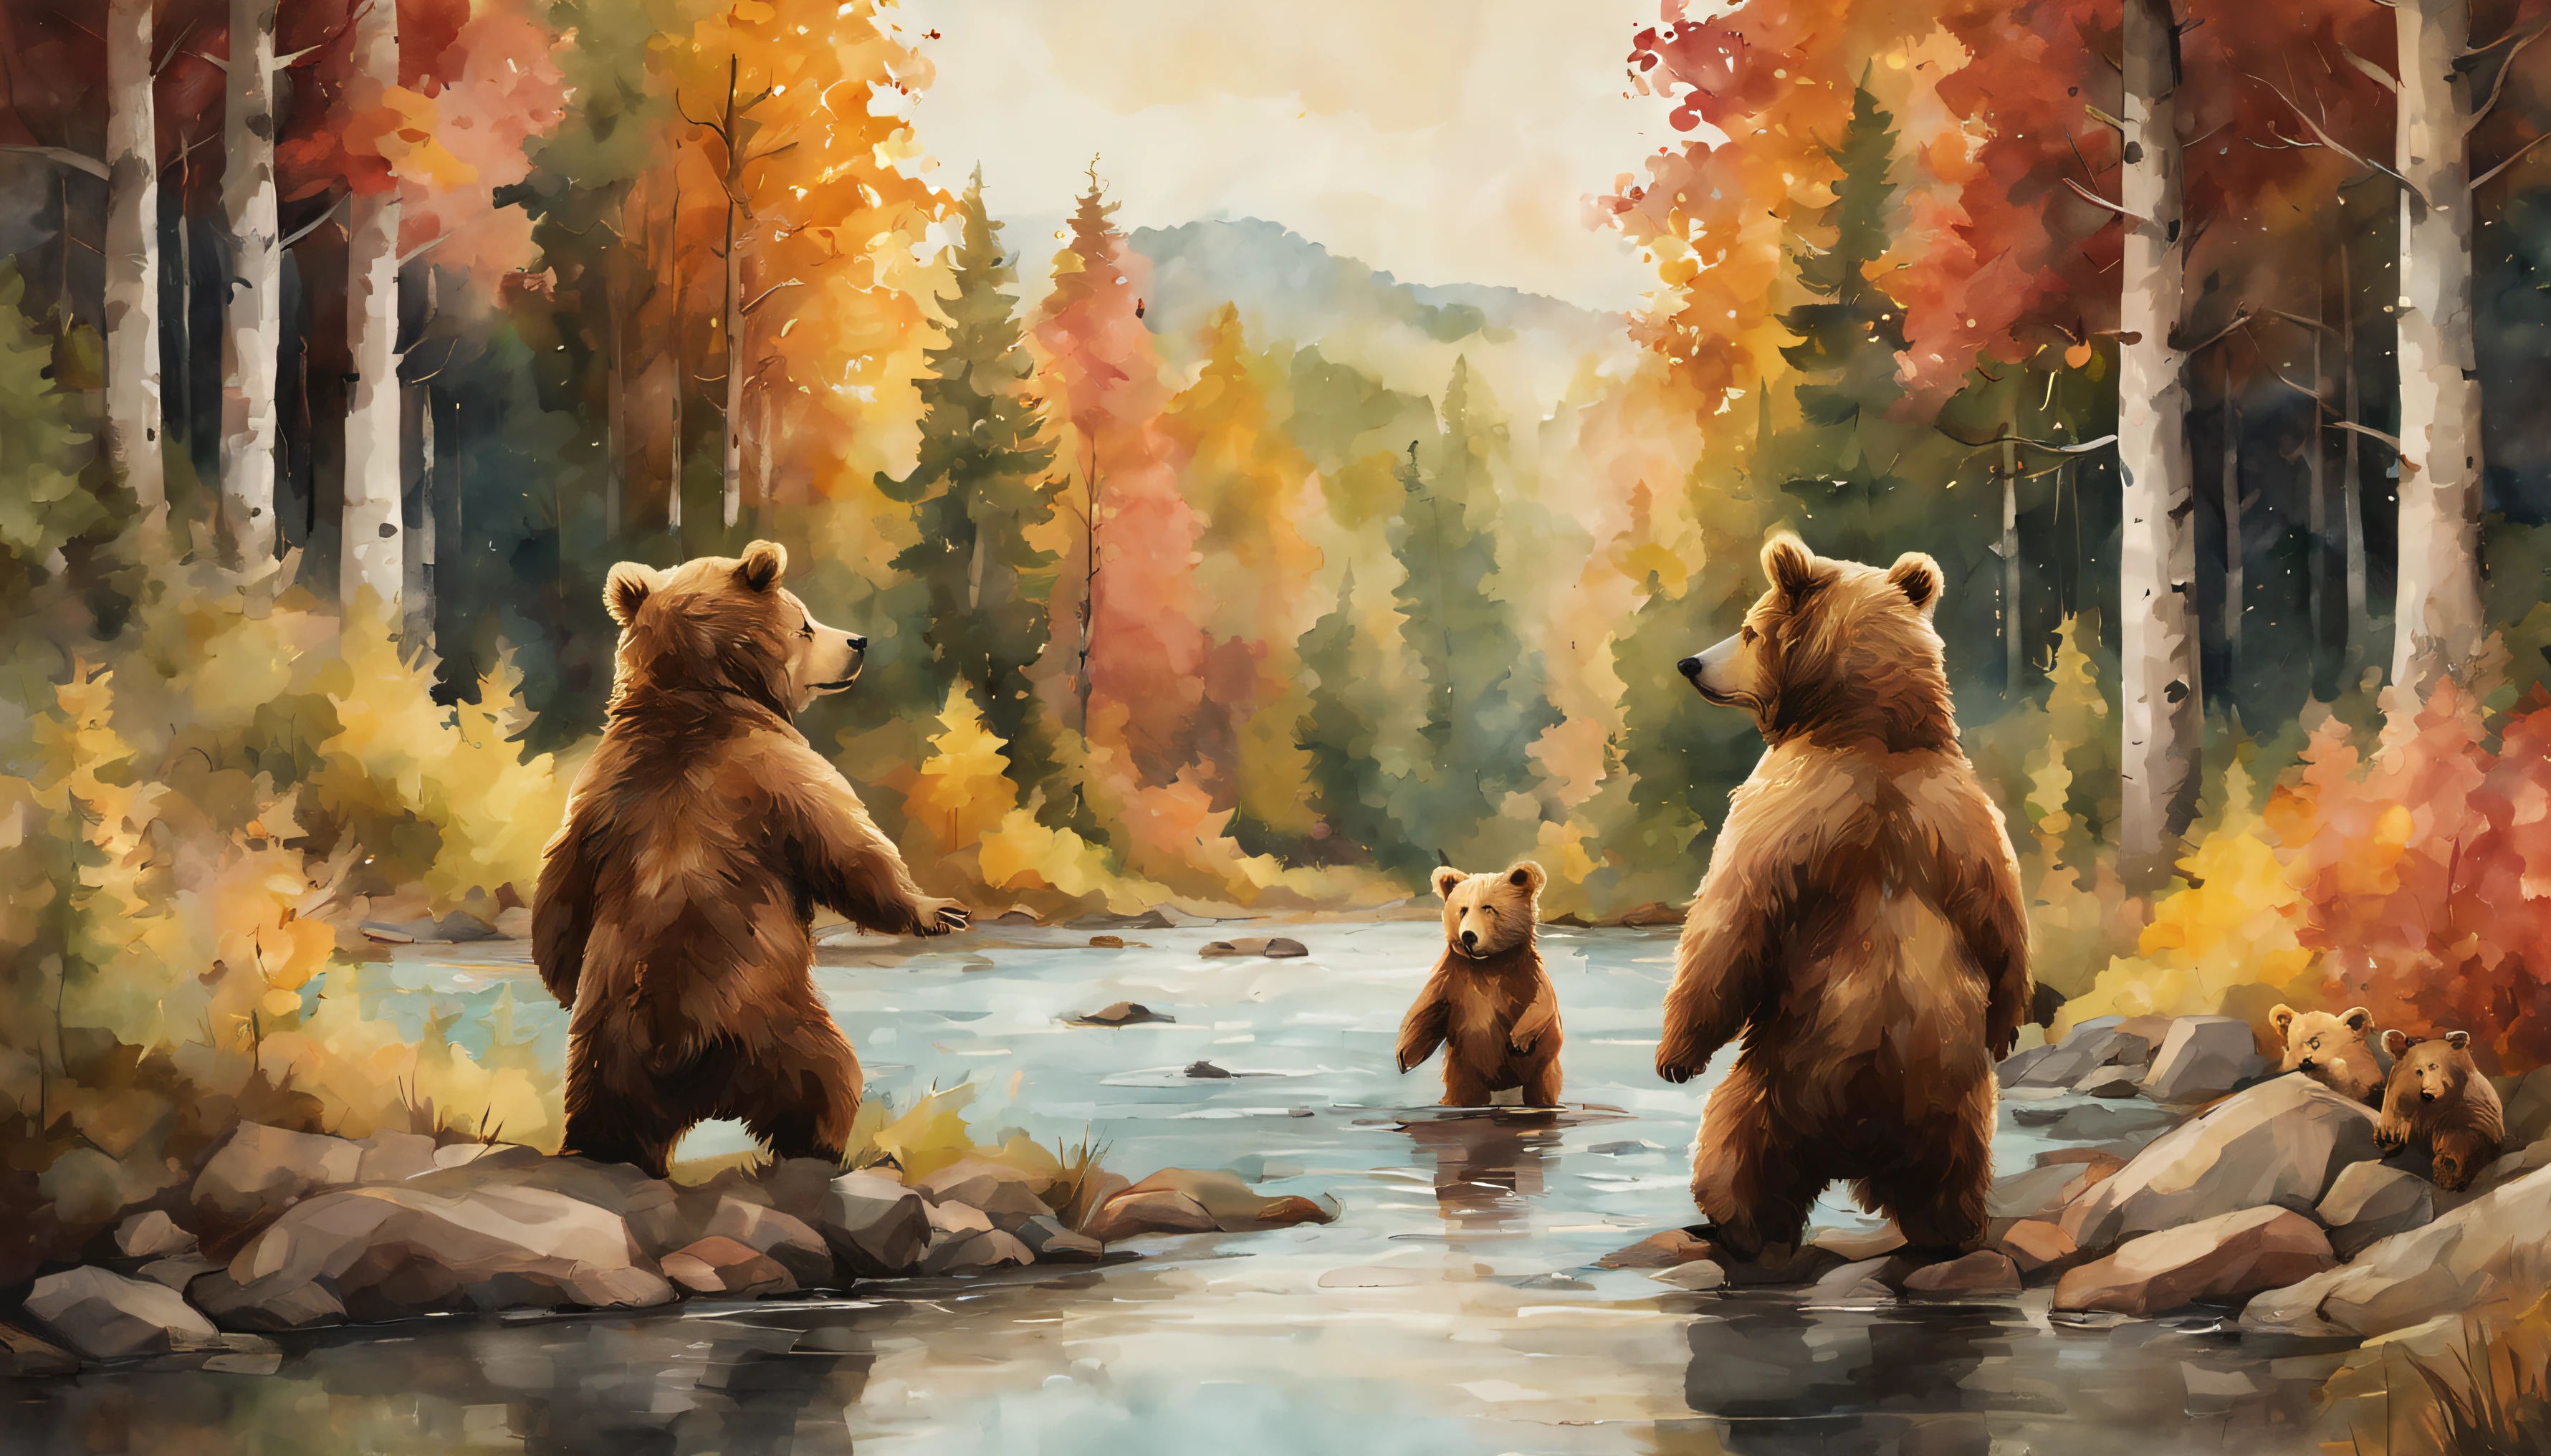 背景の画像の右半分で遊んでいる3匹のかわいいクマ, 左側には木々と川, 森, 暖かい色, 映画のような色彩, 水彩画風, 図, 詳細, 8K, (最高品質, ultra-詳細:1.6)